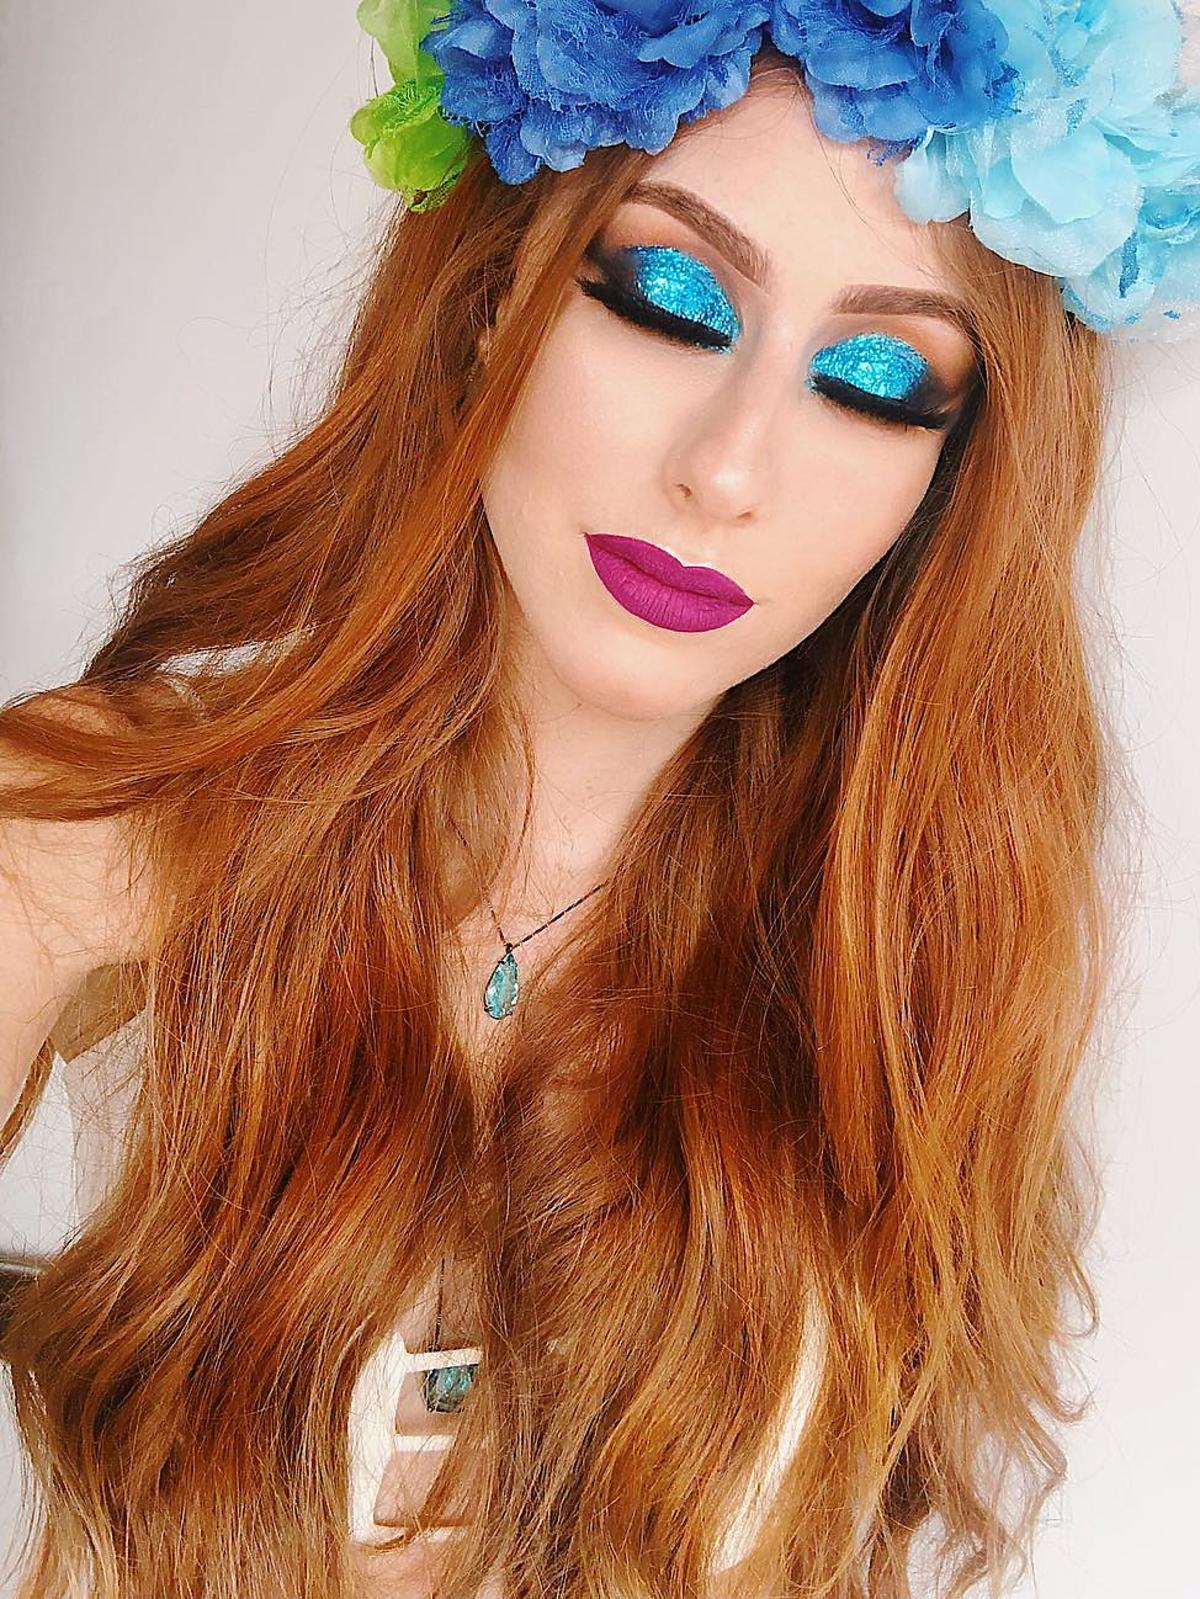 Blogerka makijażowa, która najlepiej wygląda bez make-upu